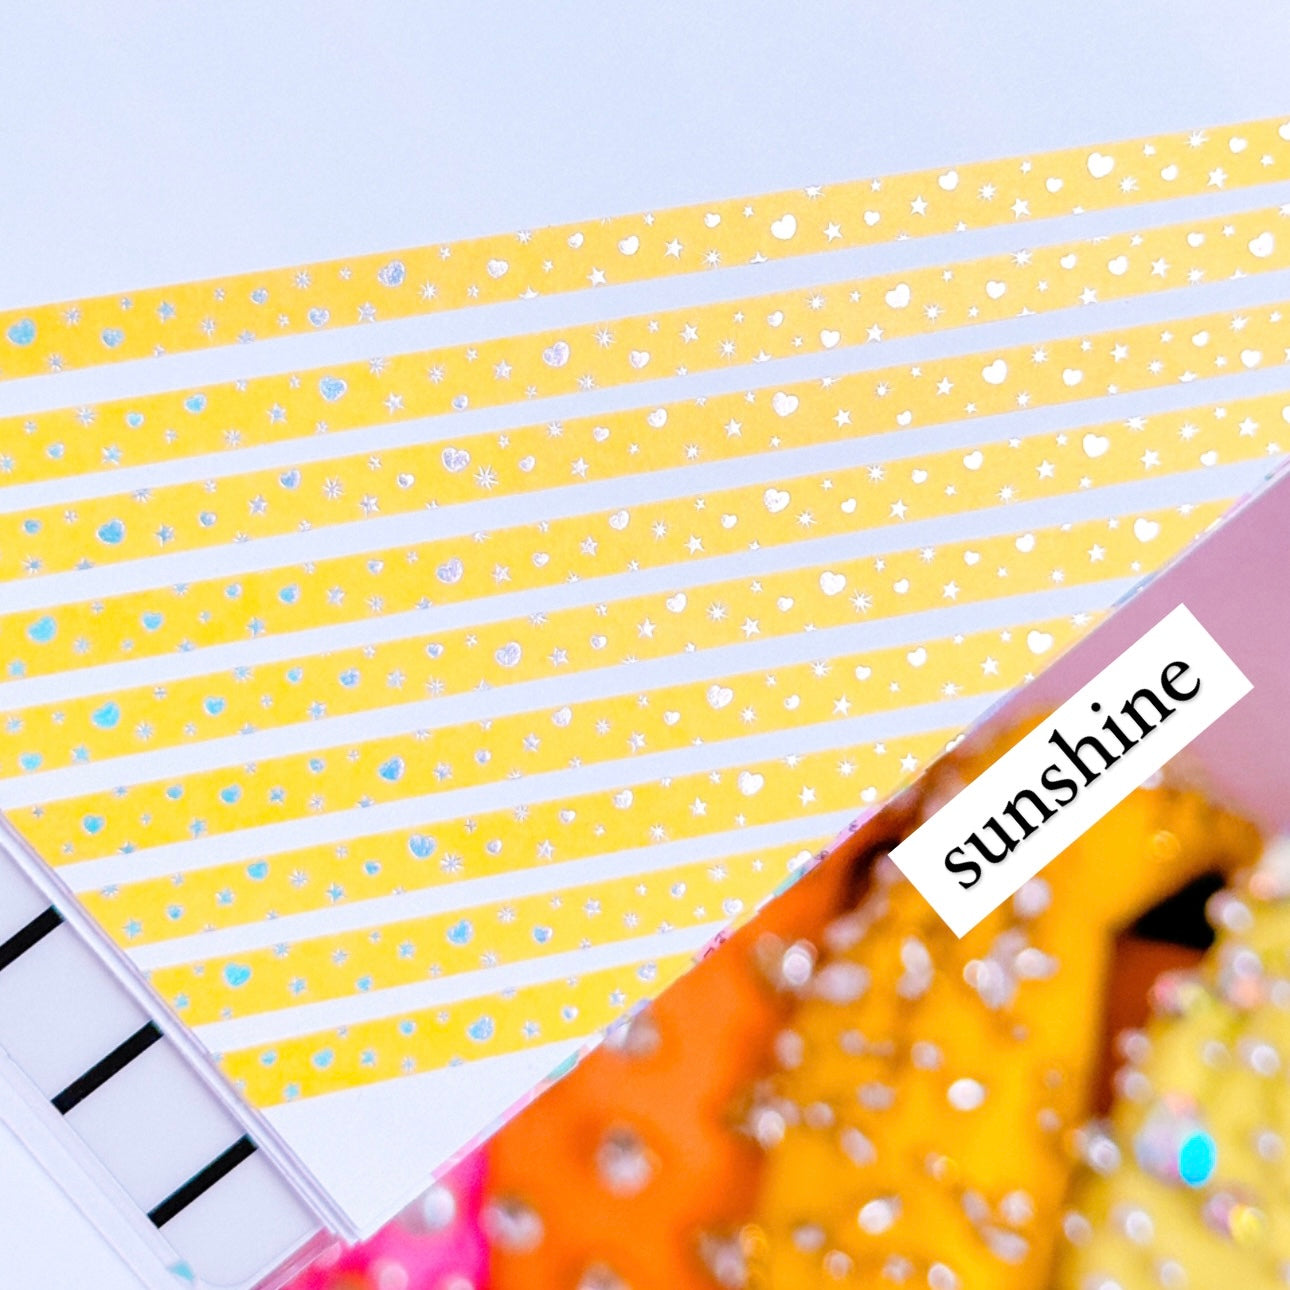 5MM Foiled Washi Tape - Pastels Rainbow Confetti (Holo Foil)